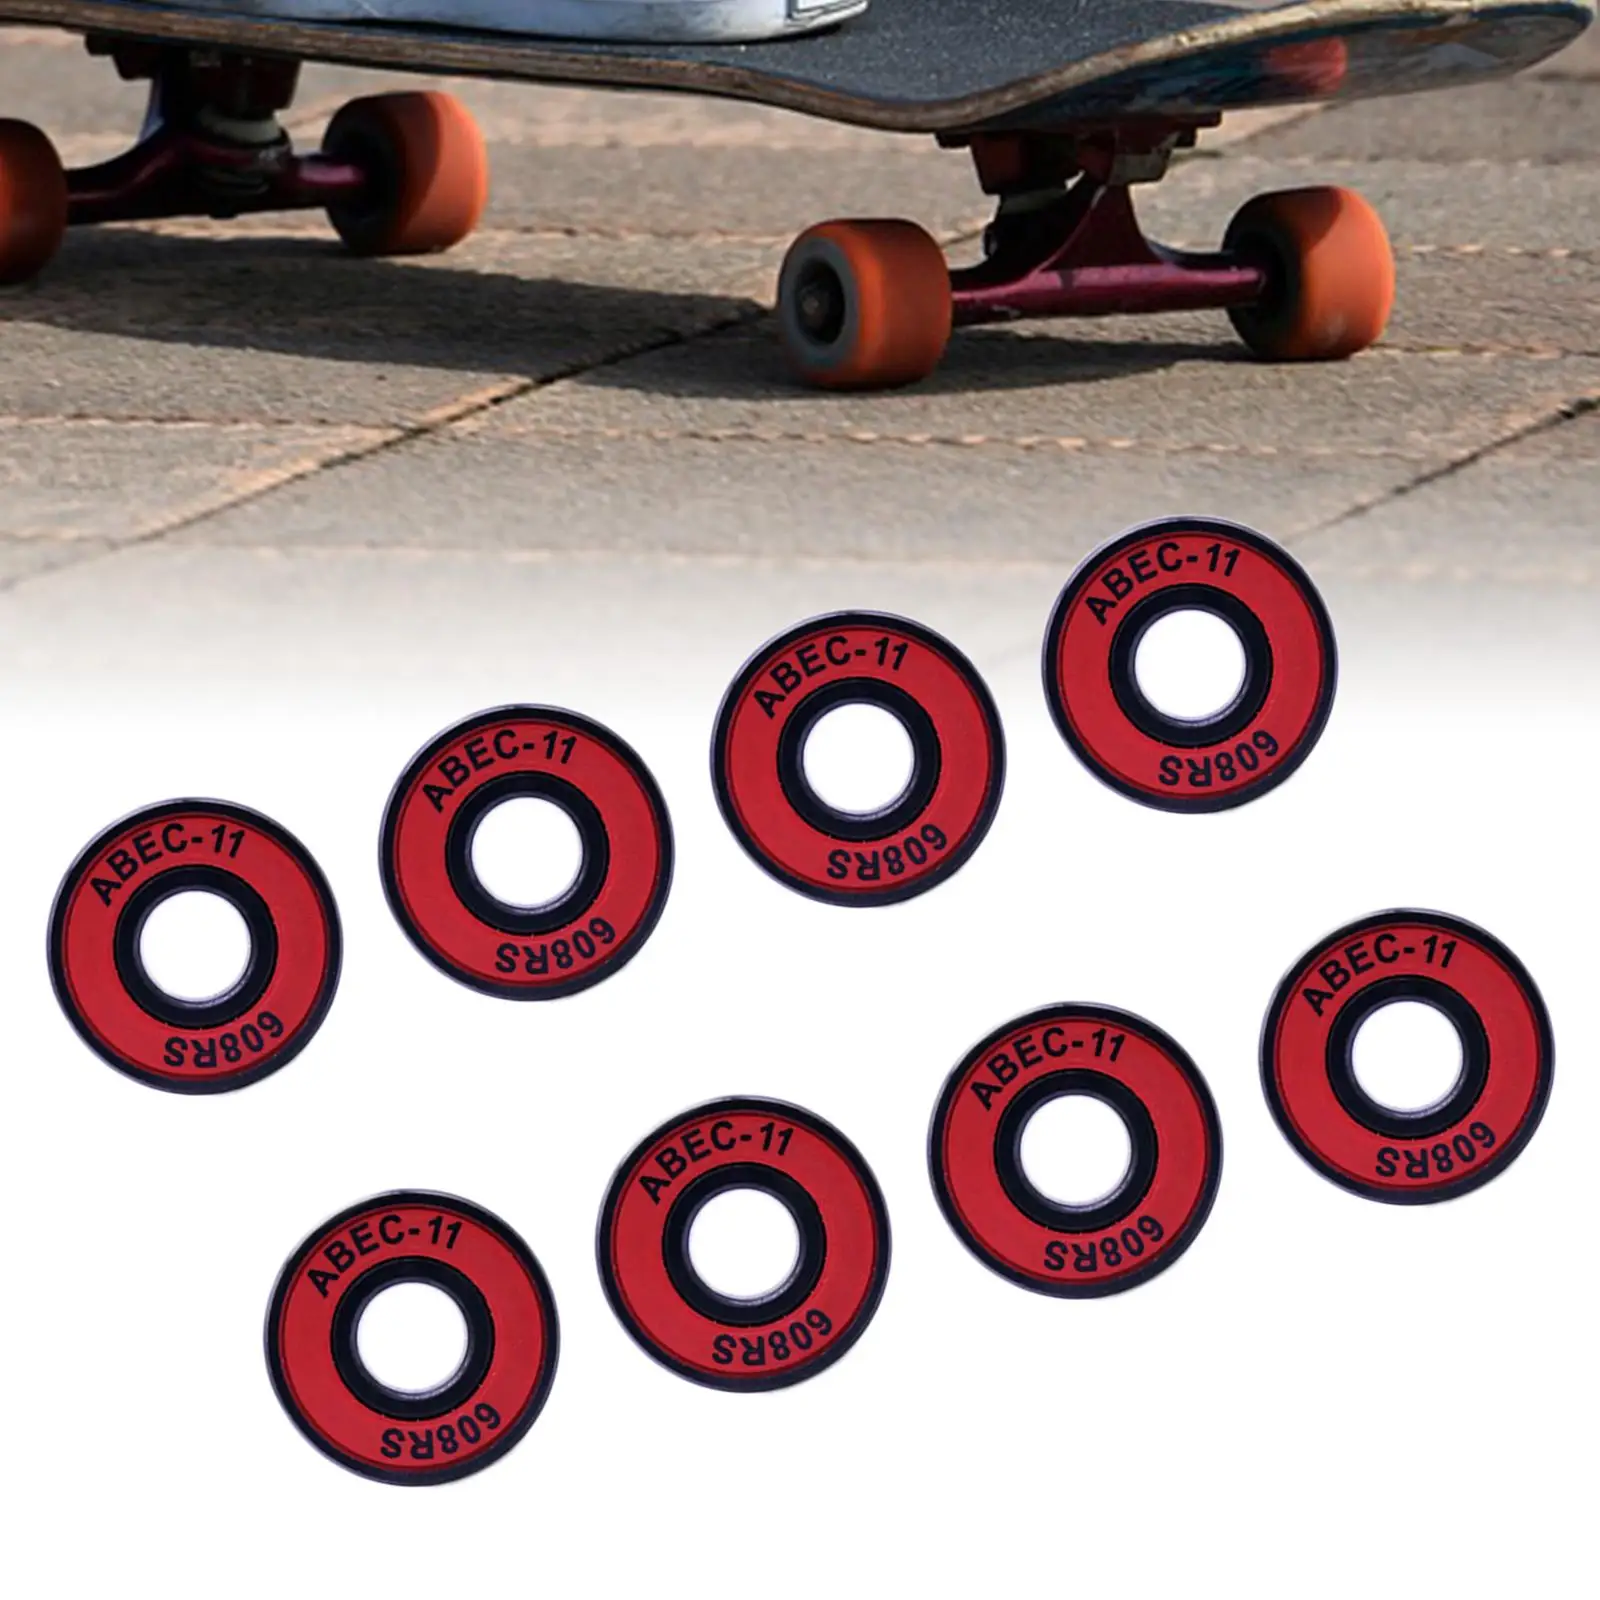 8pcs ABEC 11 608 Speed Bearing Roller Skate Bearings Scooter Skateboard Wheel Bearings Racing Inline Skating Bearing